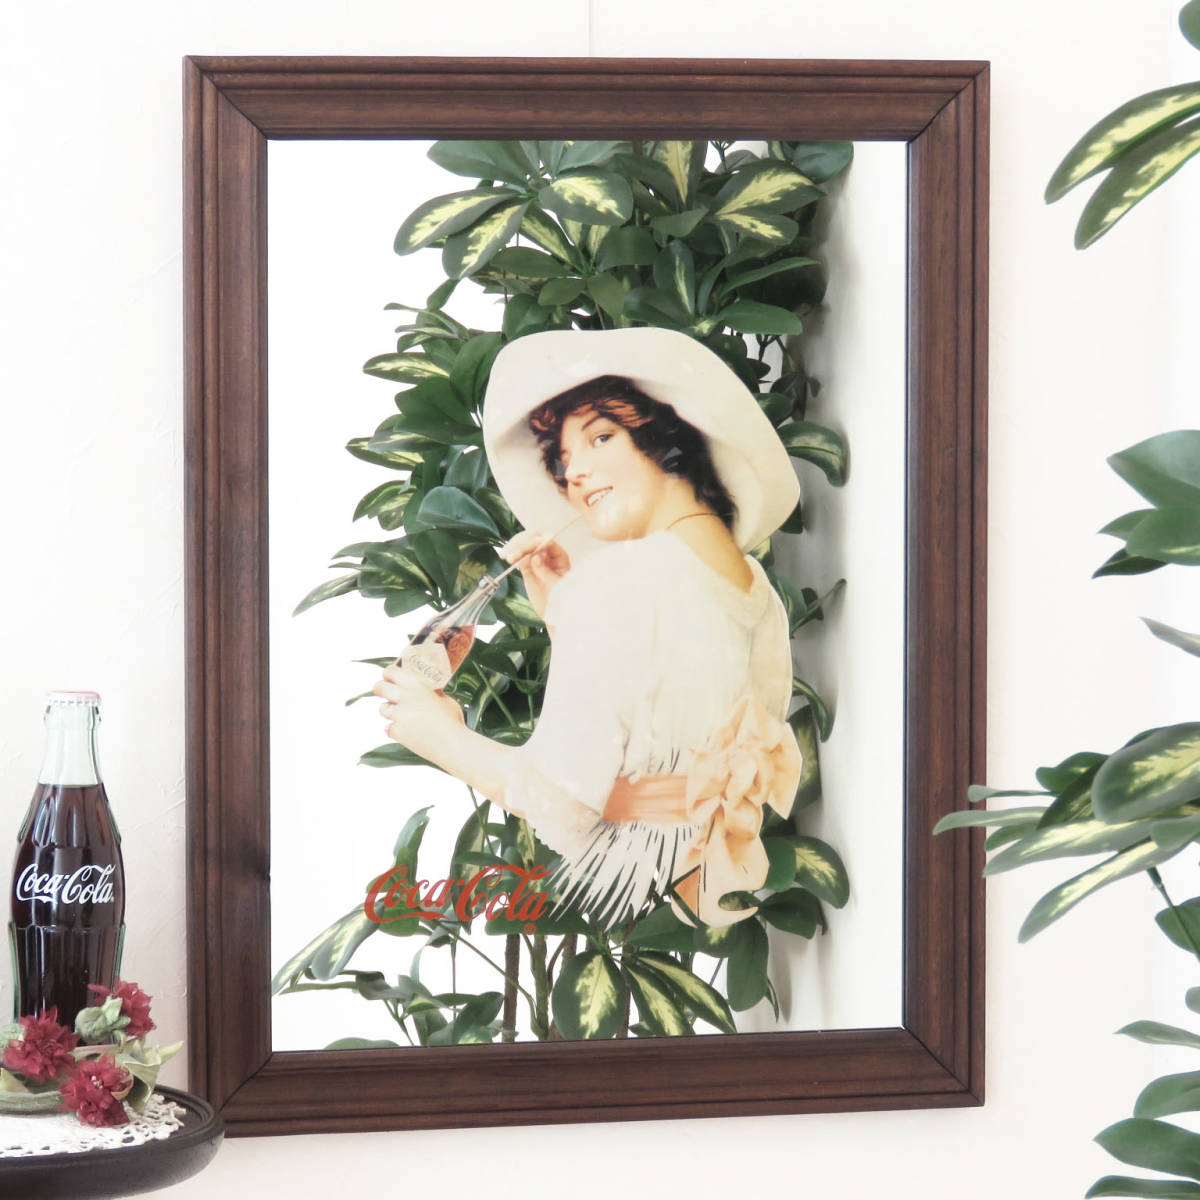 ビンテージパブミラー/コカ・コーラ (Coca-Cola) 白いドレスの女性/店舗什器(レストラン) /ディスプレイ/インテリア雑貨/壁掛け鏡/A-4450-8_画像1